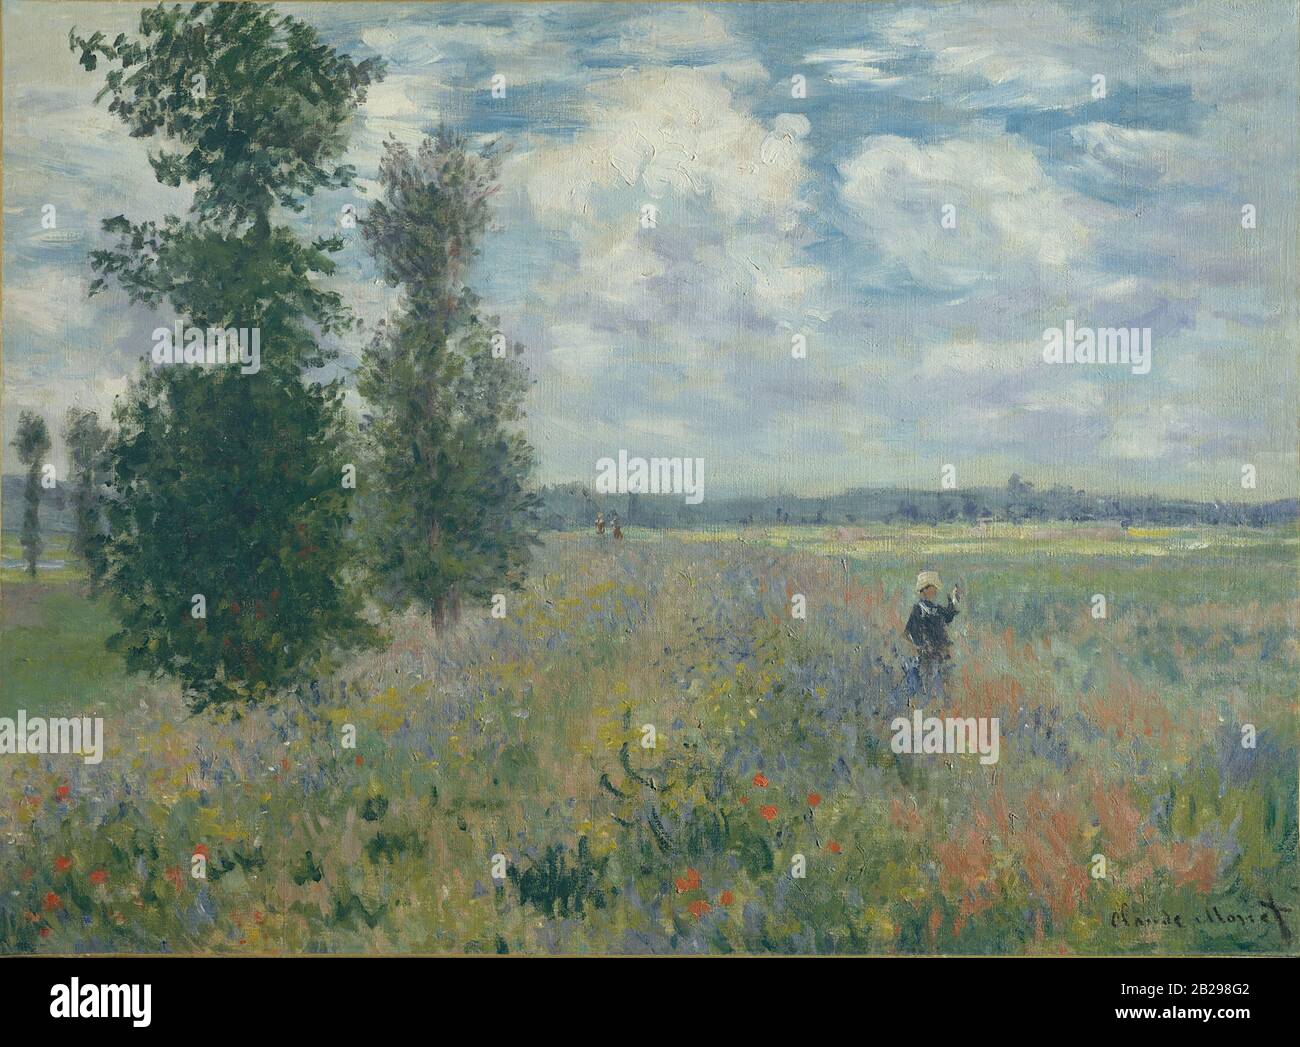 Mohnfelder in der Nähe von Argenteuil (1875) Gemälde von Claude Monet - Sehr hohe Auflösung und hochwertige Bilder Stockfoto